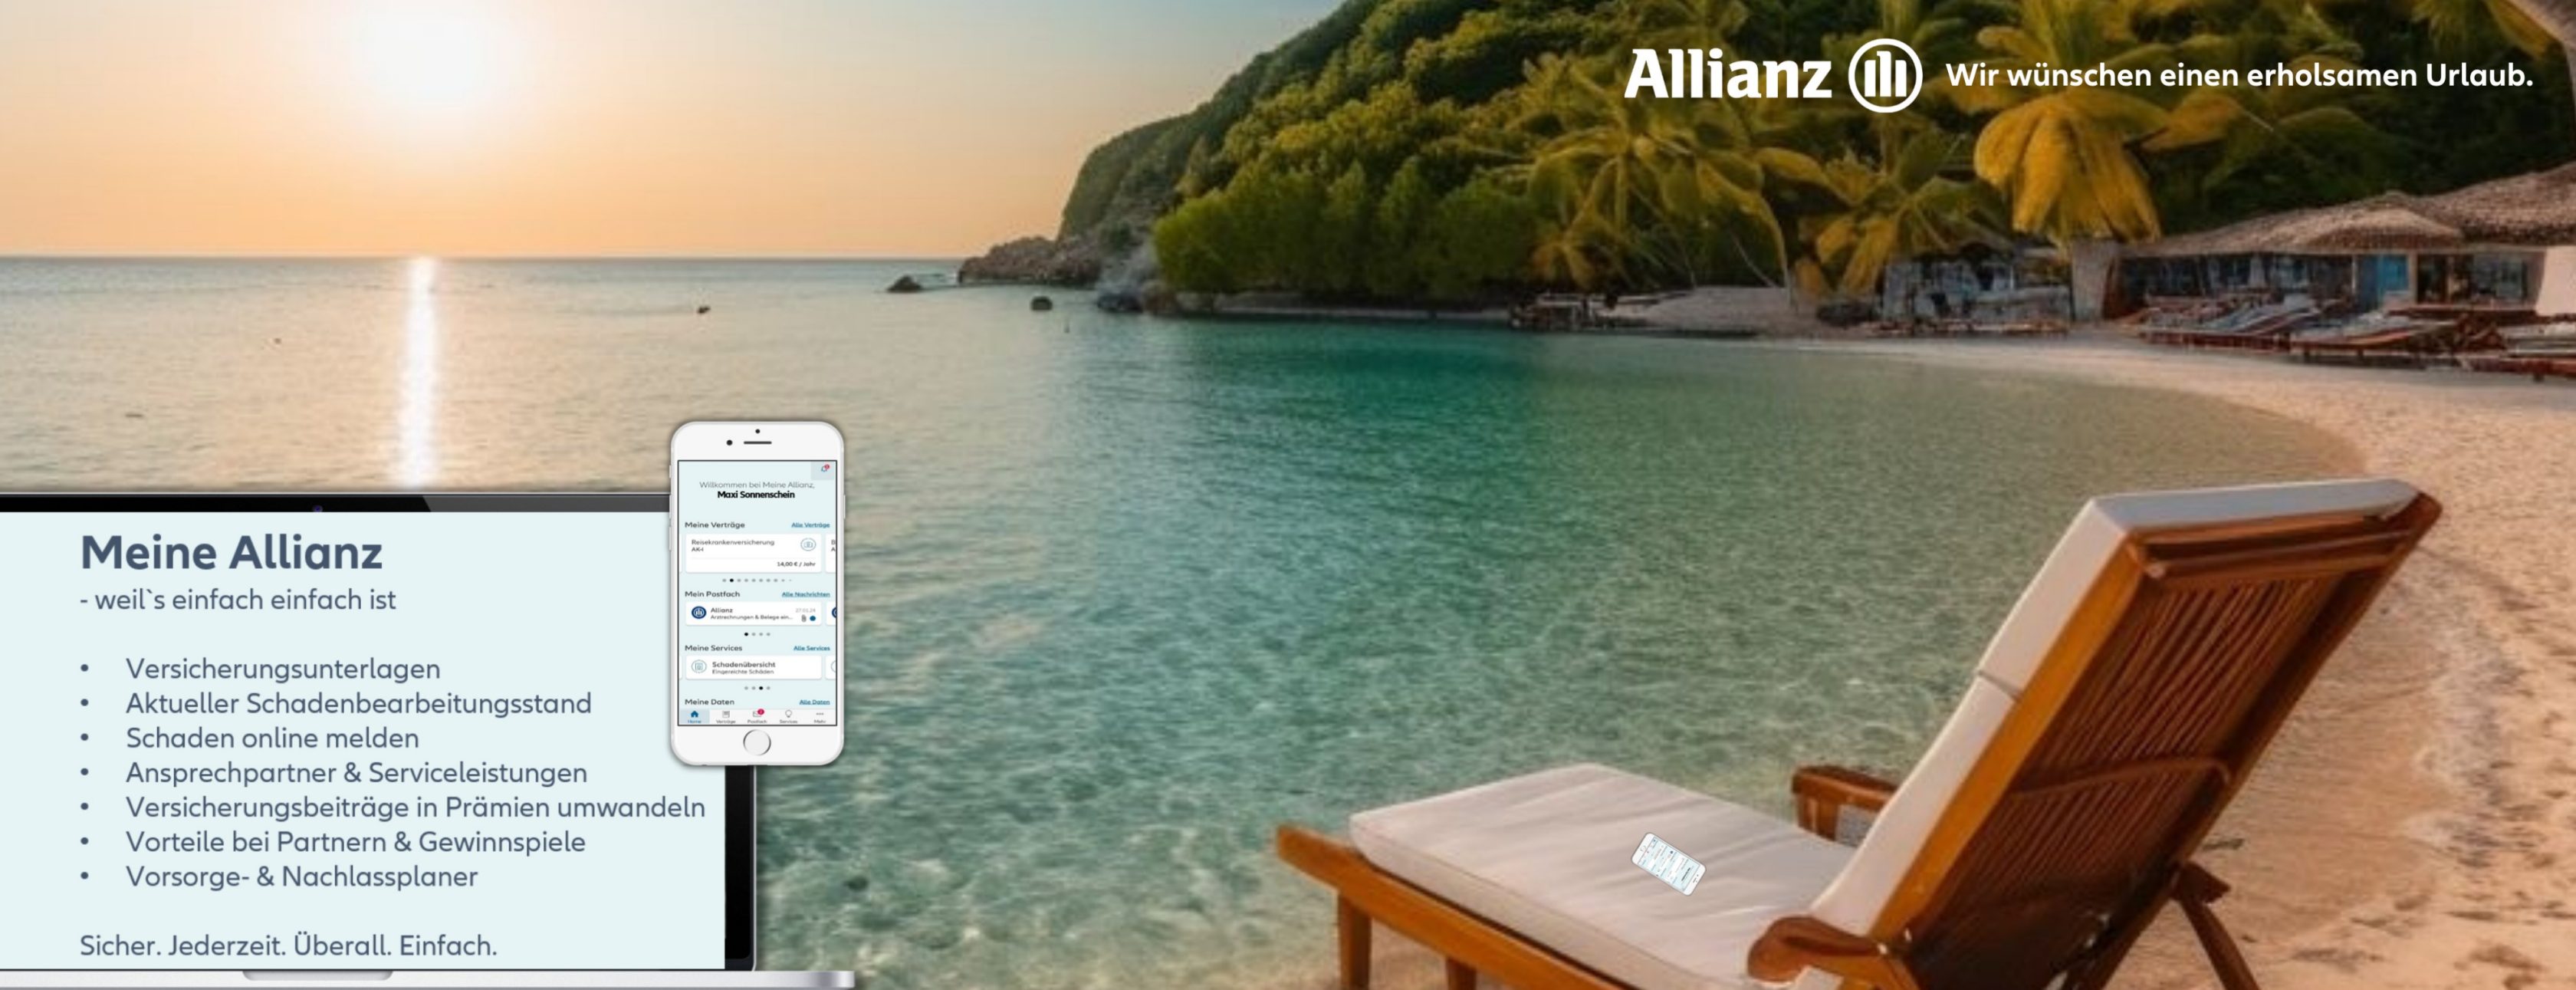 Allianz Versicherung Kurt Moryson Blankenfelde-Mahlow - Meine Allianz Werbung mit Urlaub